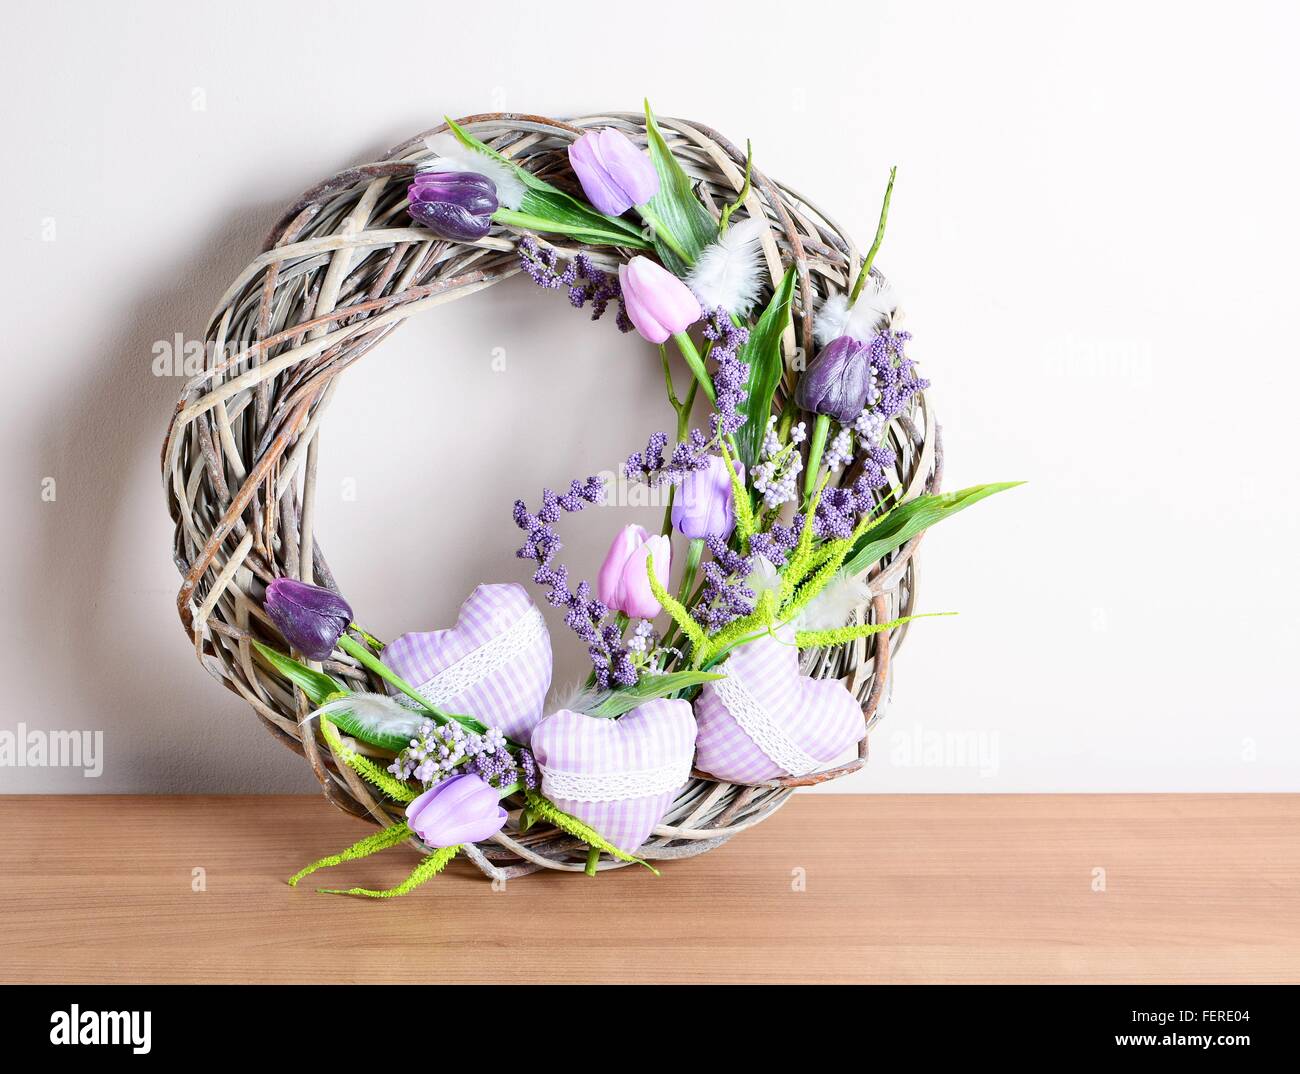 Pascua decorados caseros decoración floral en la mesa. Acuerdo de fabricación casera. Foto de stock